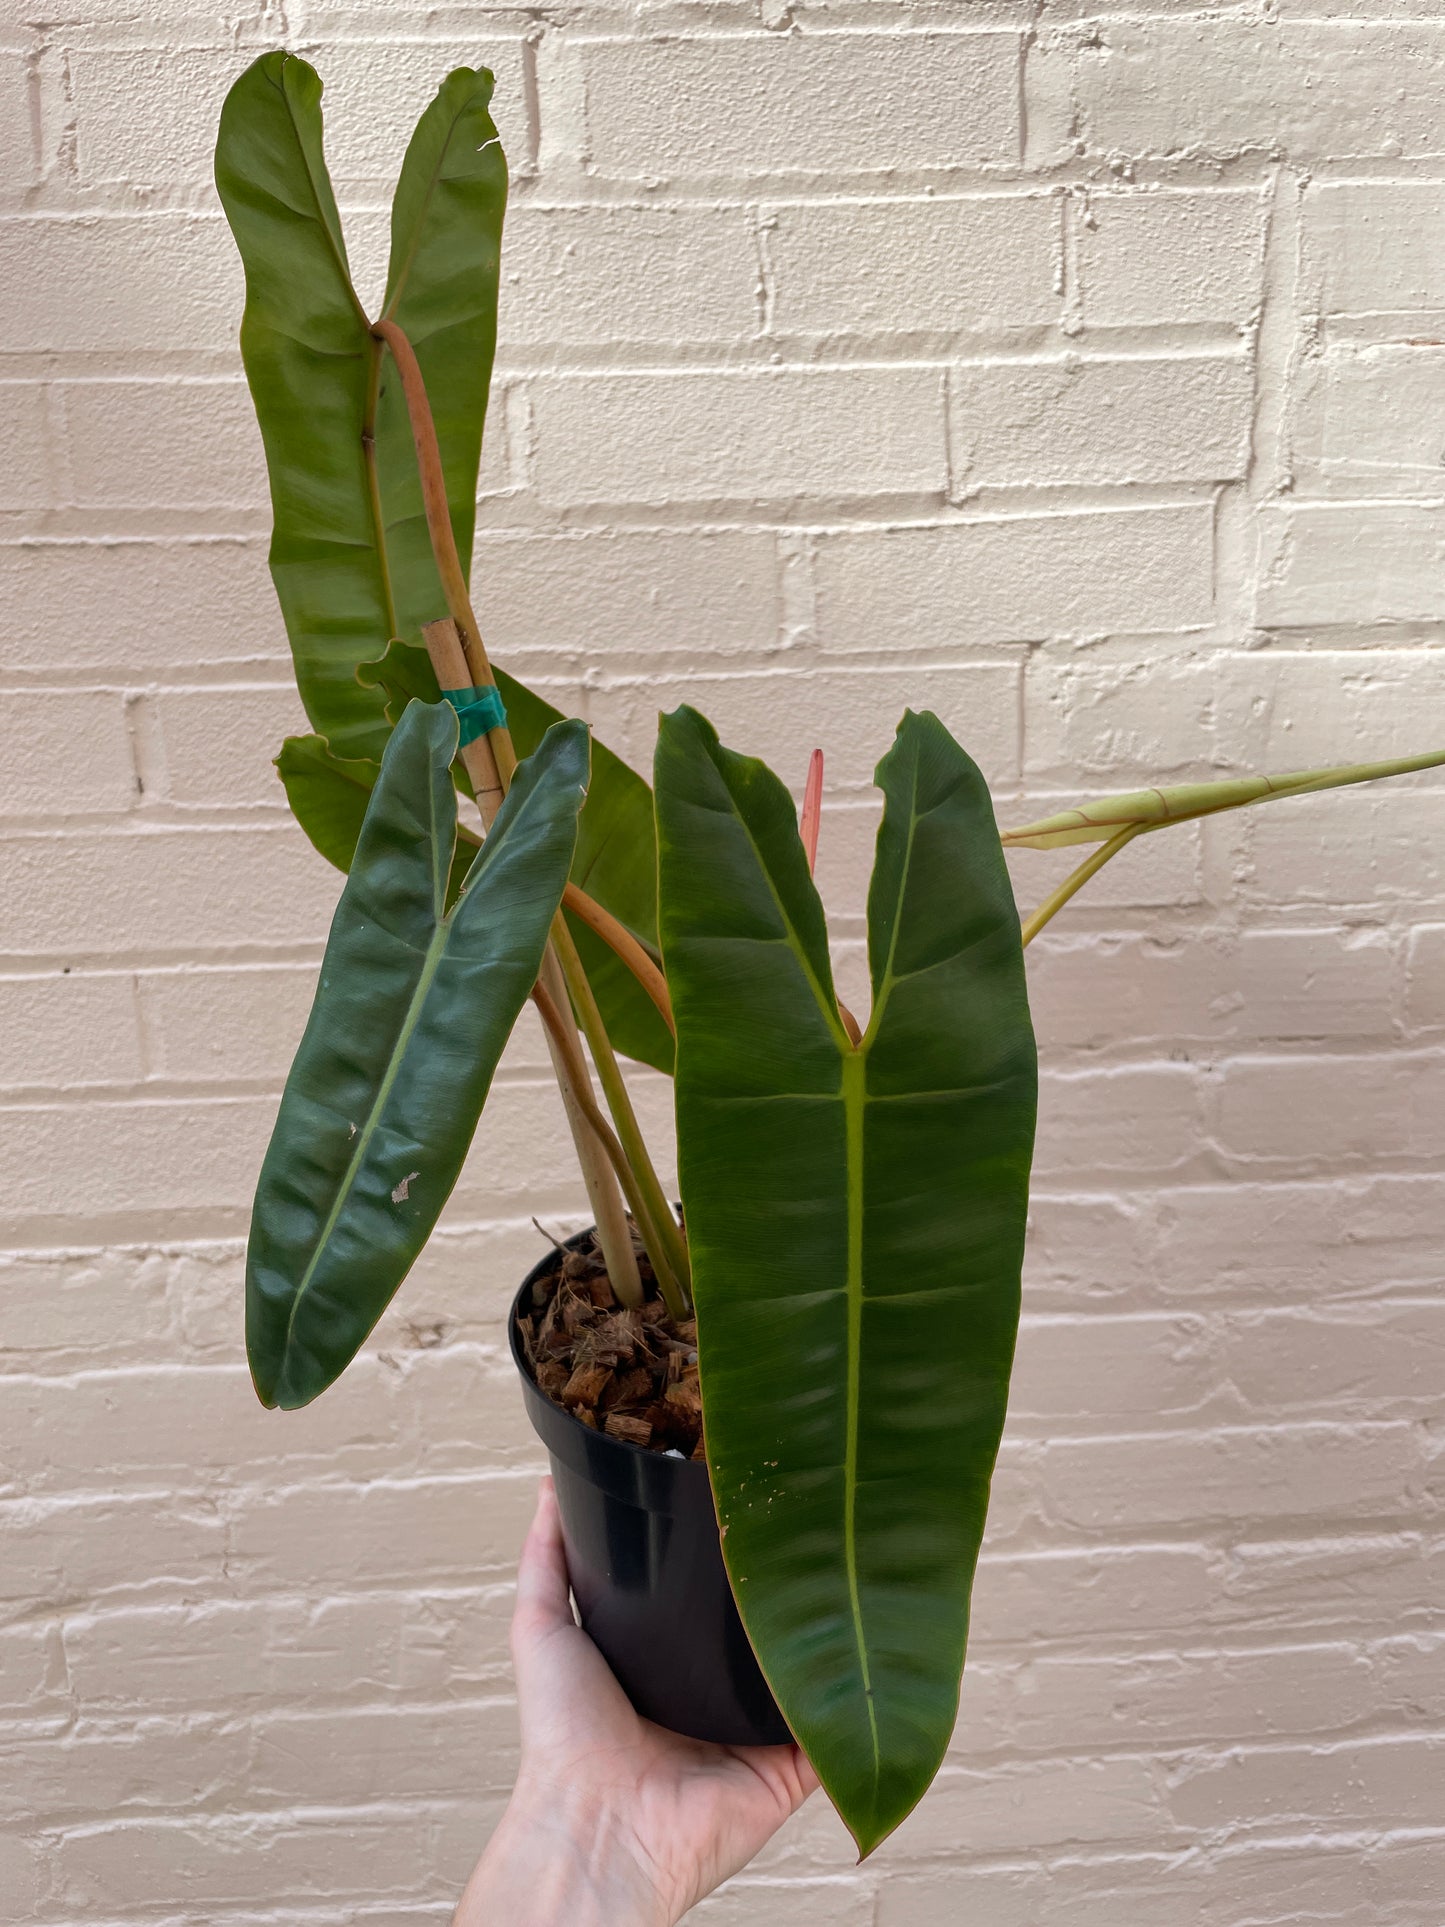 Philodendron billietiae 4-6"